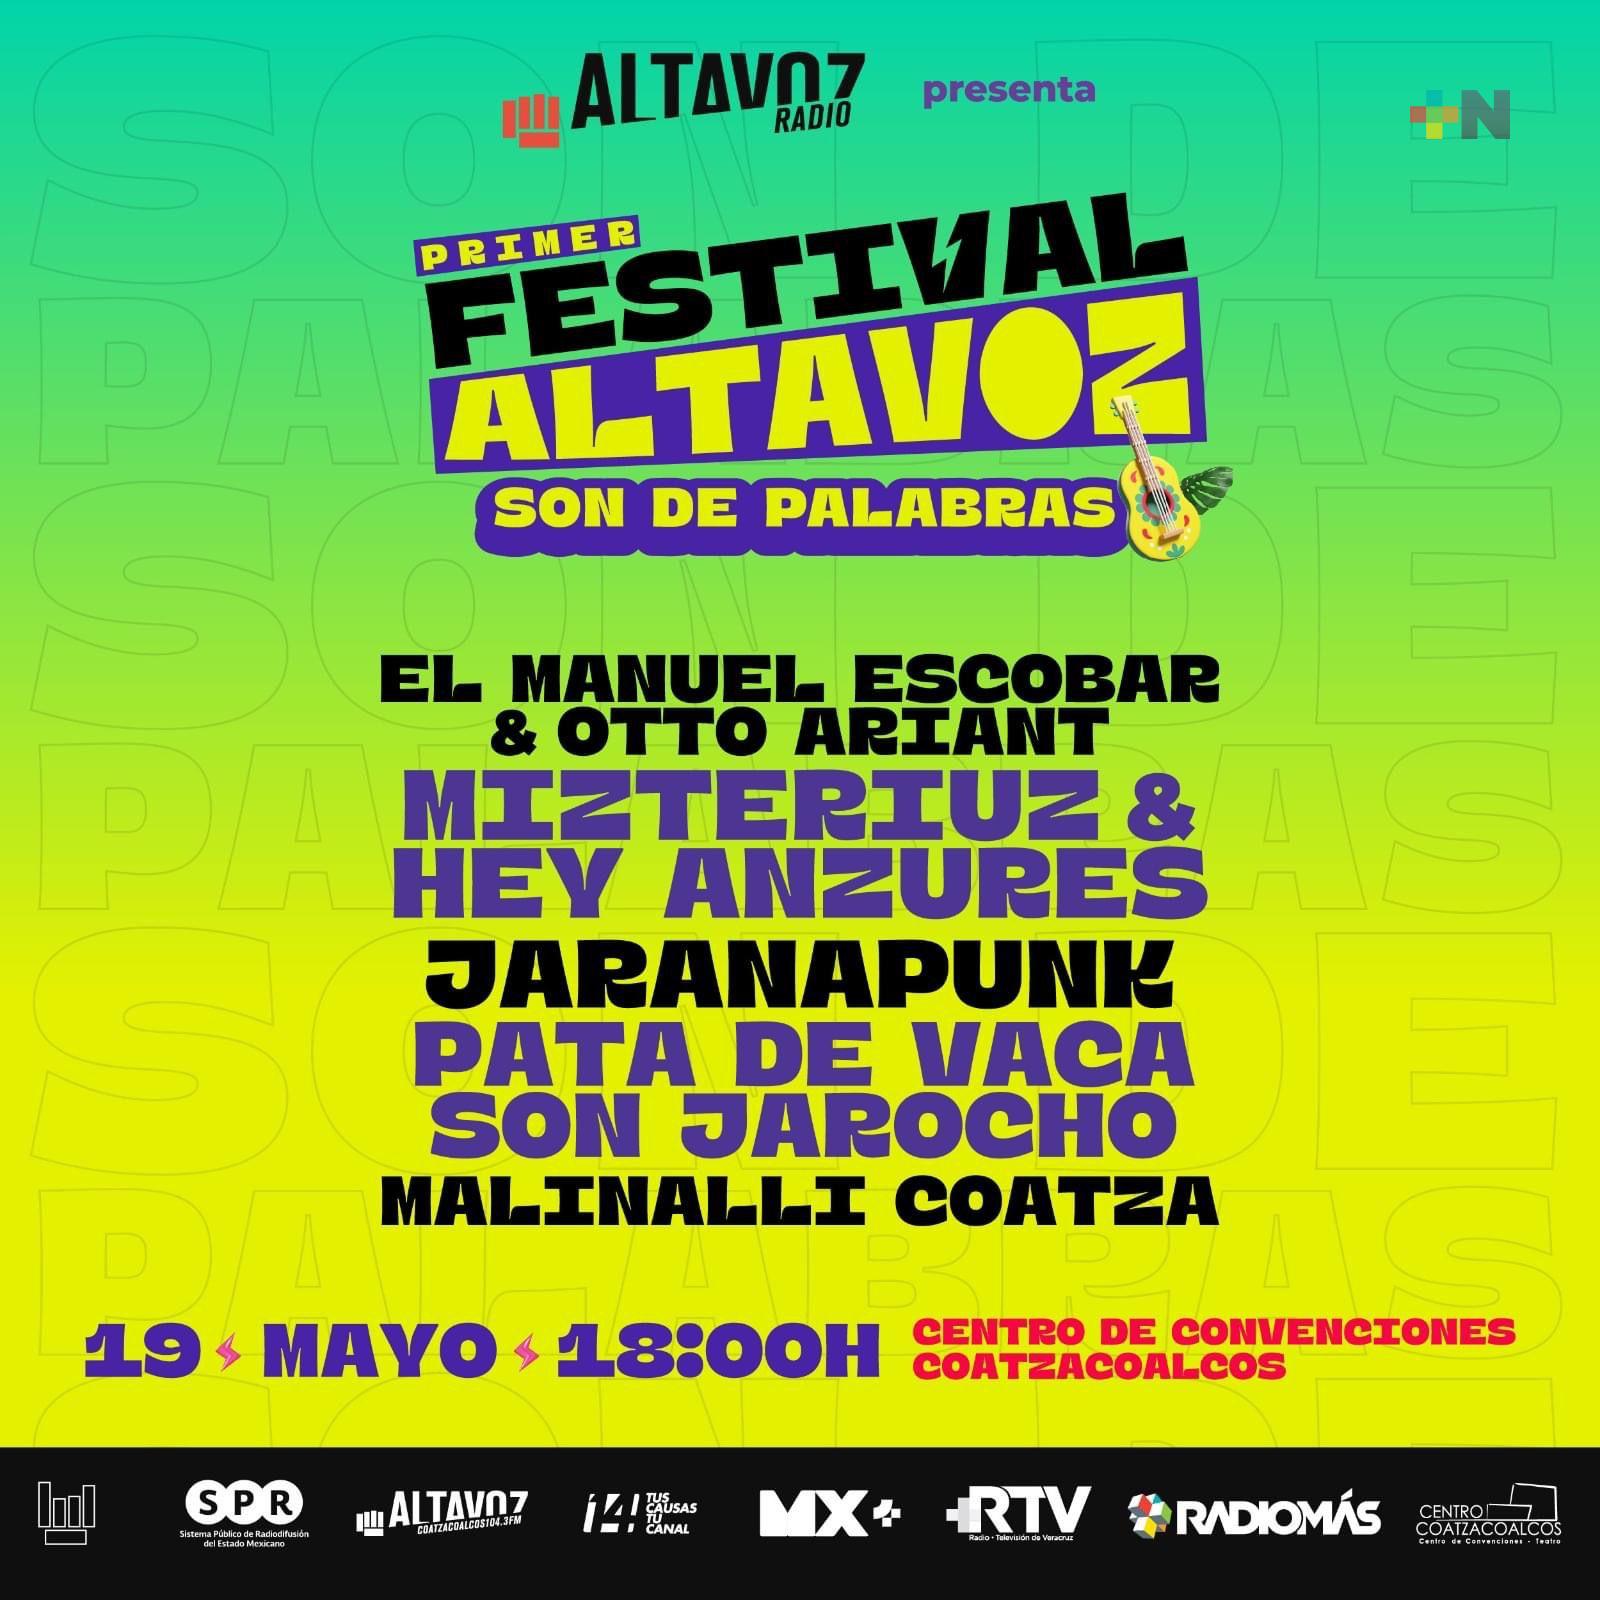 Altavoz Radio presenta el festival «Altavoz, son de palabras»